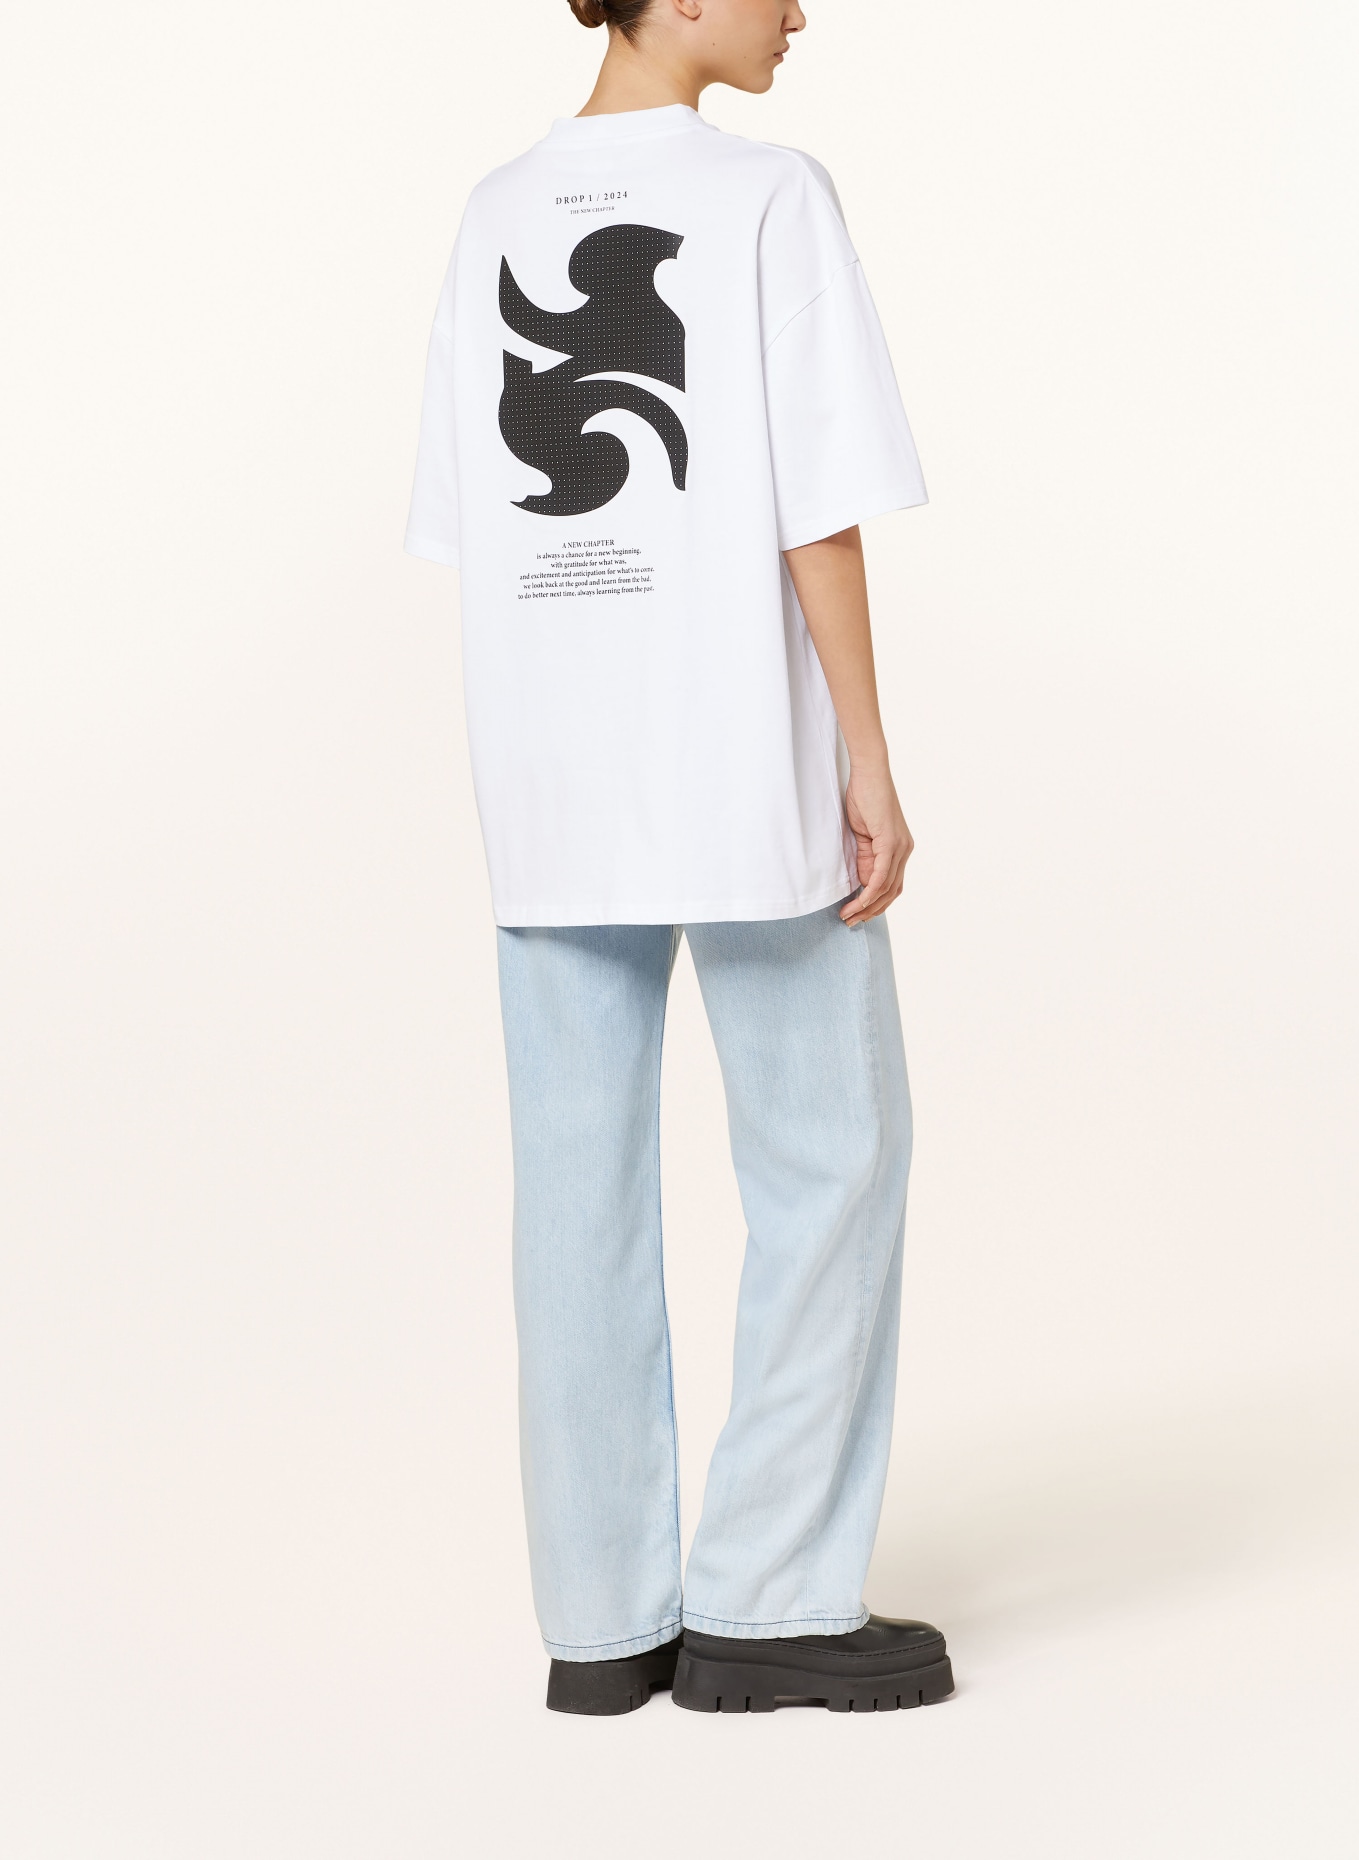 KARO KAUER Oversized shirt, Color: WHITE (Image 3)